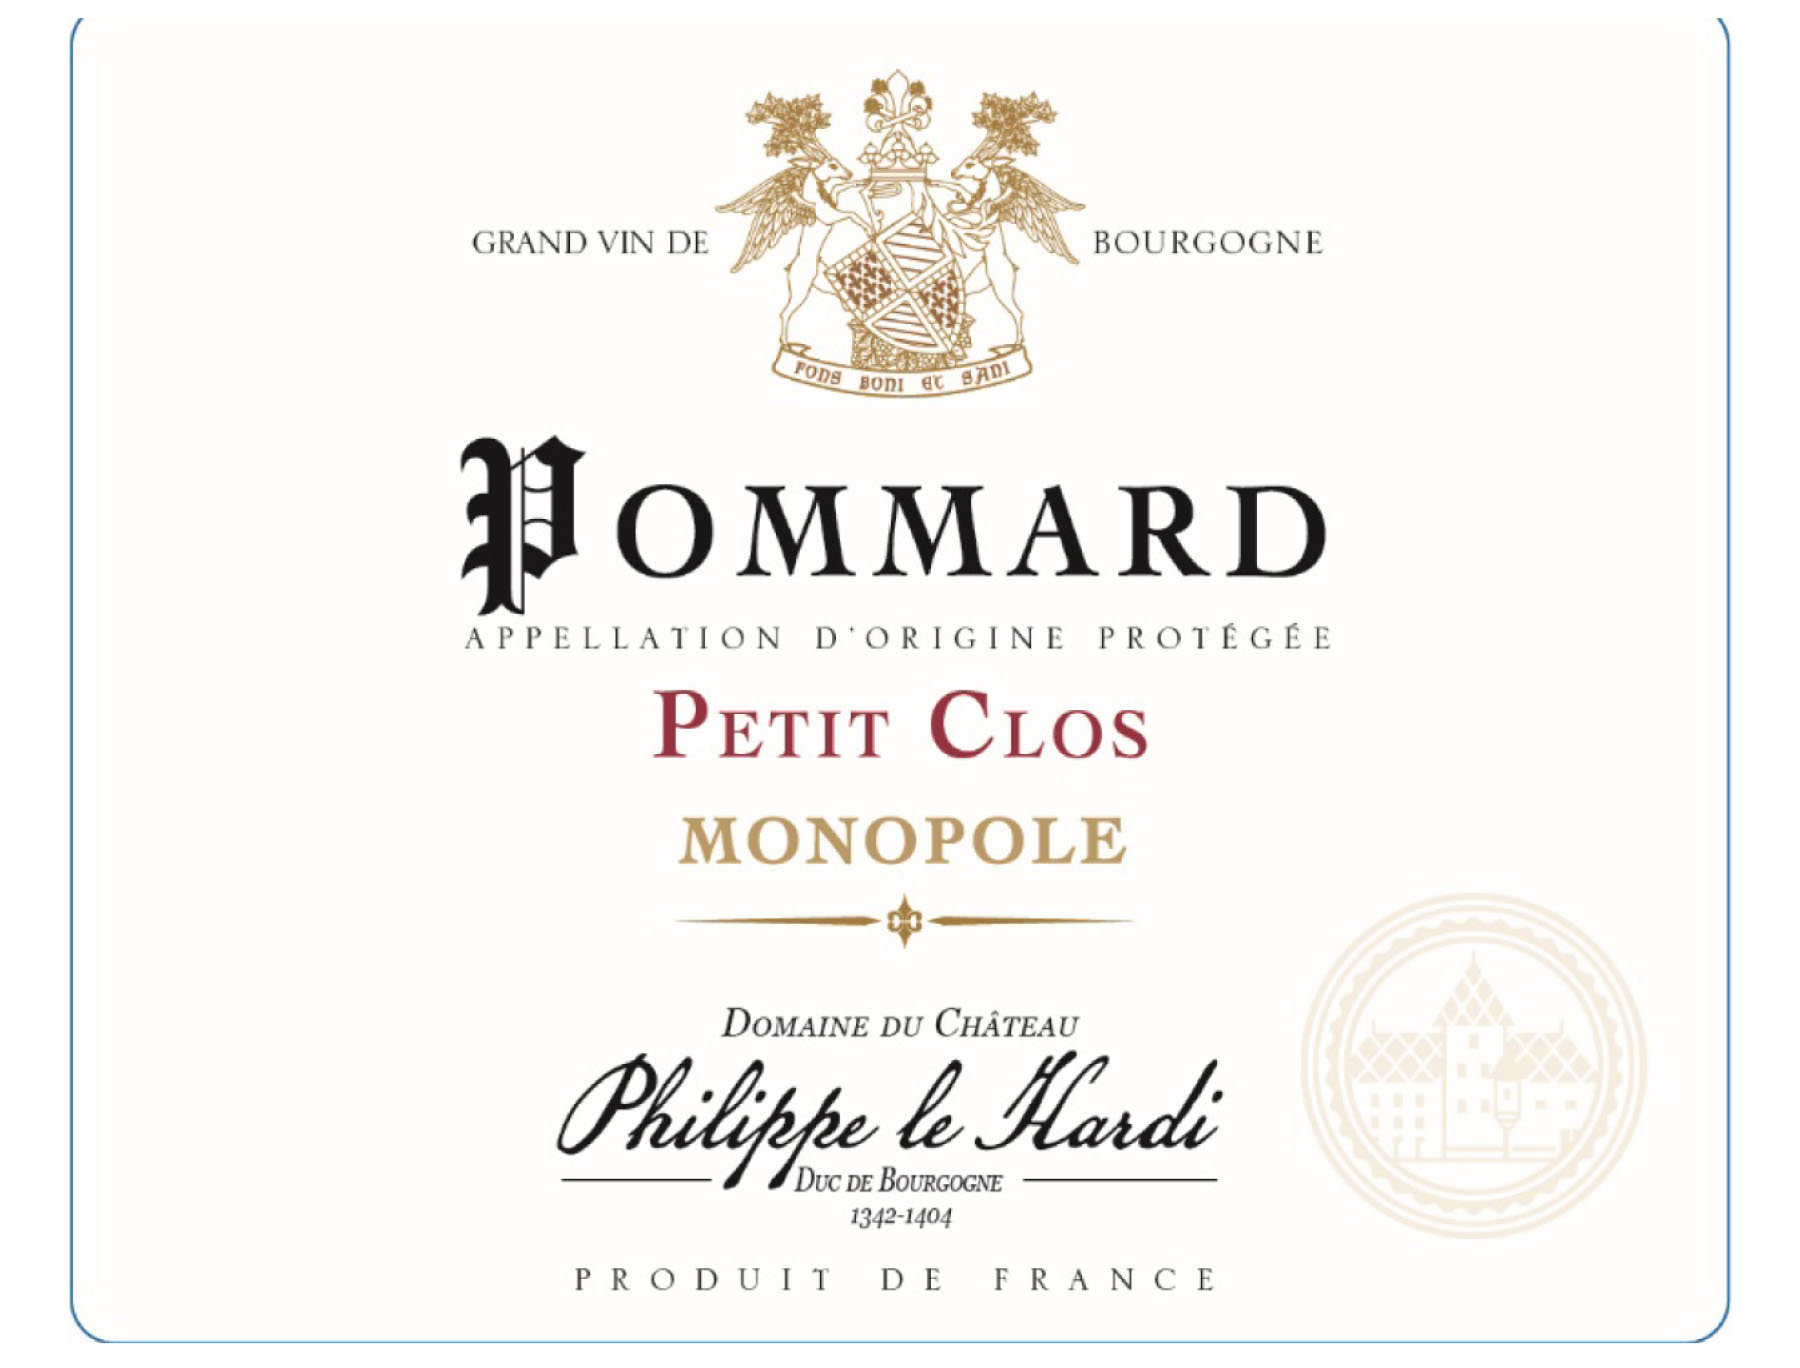 Domaine du Château Philippe le Hardi - Pommard Petit Clos Monopole label